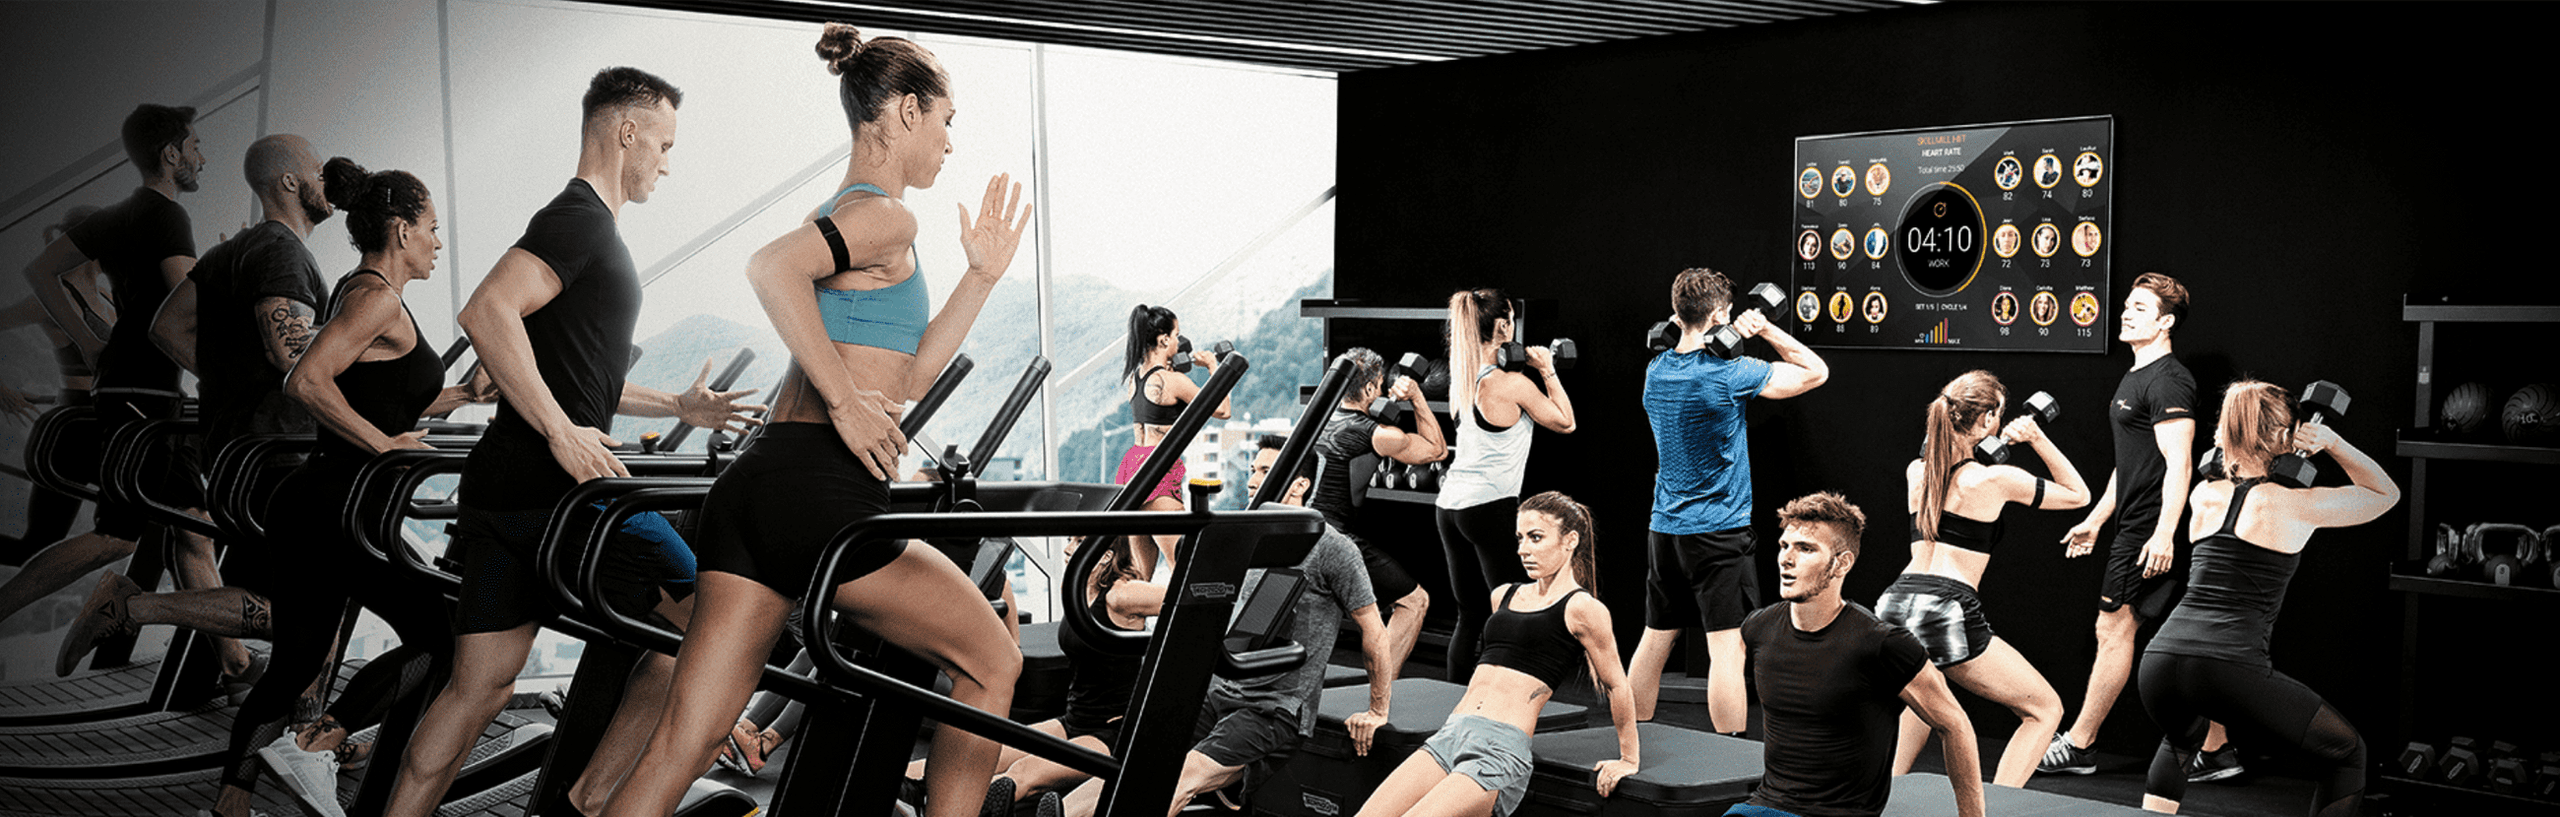 Hur kan du öka intäkterna på ditt gym?